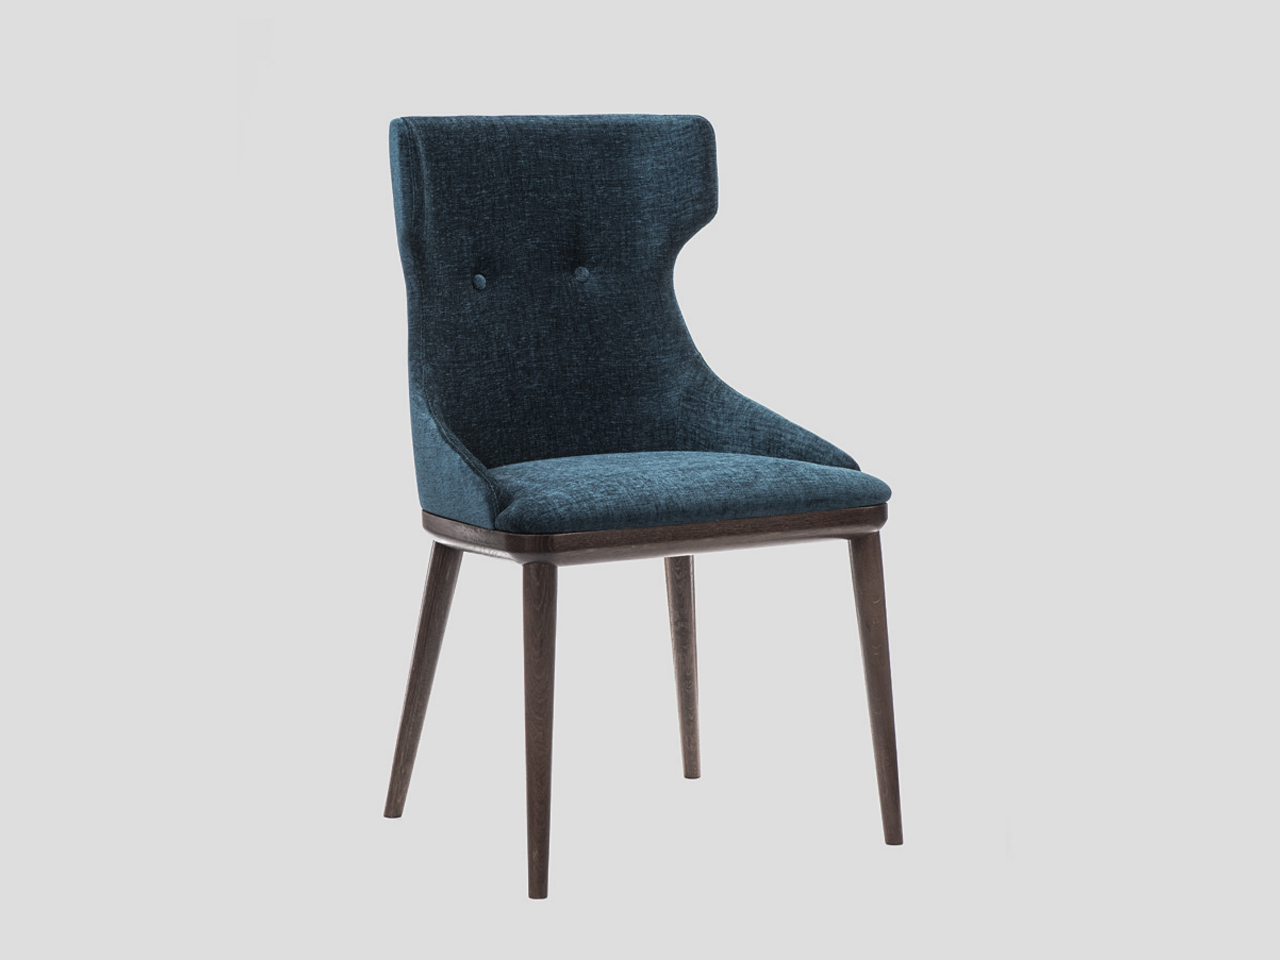 Moderna tapacirana stolica sa drvenim nogama i dugmicima DESTRA Linea Milanovic